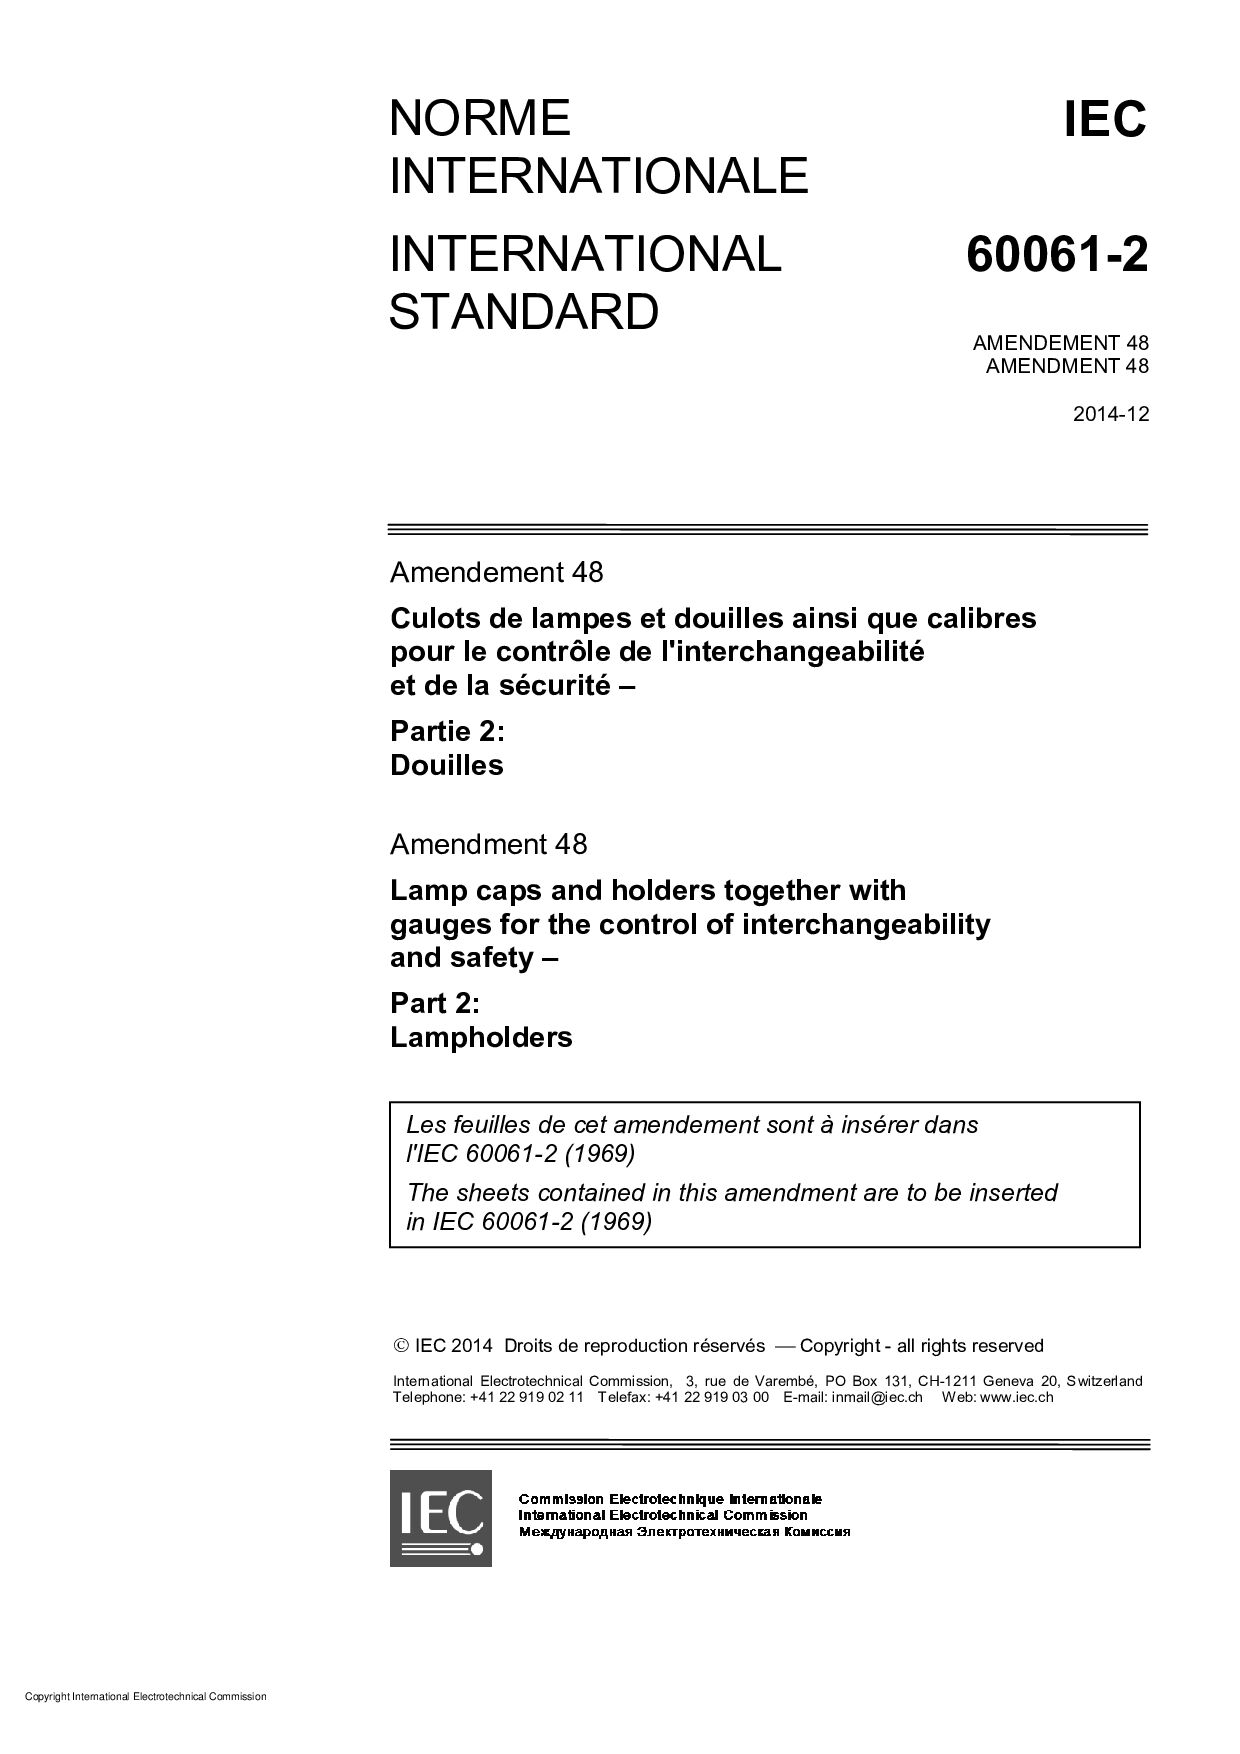 IEC 60061-2:1969/AMD48:2014